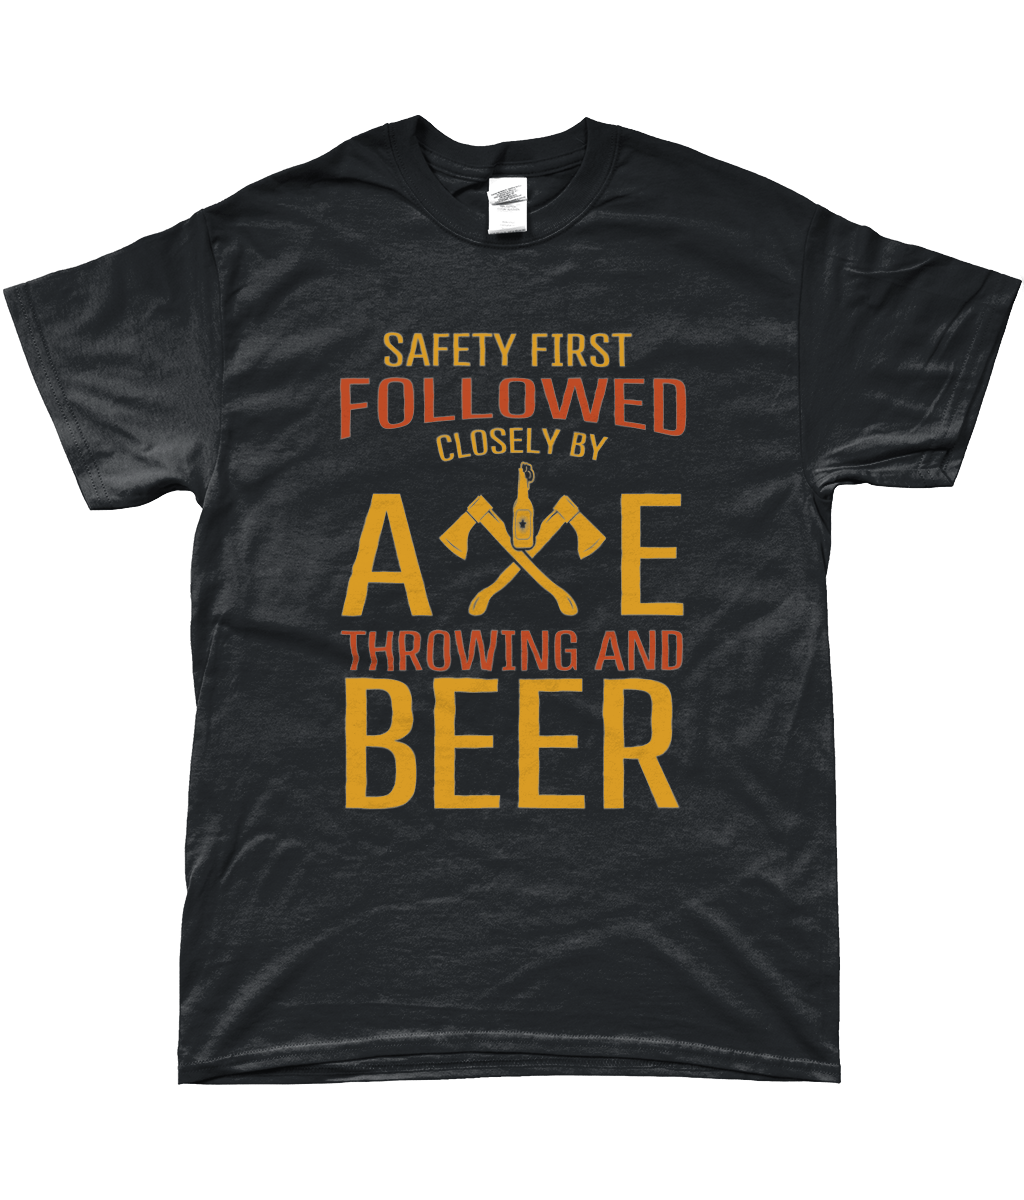 safety first | dark shirt